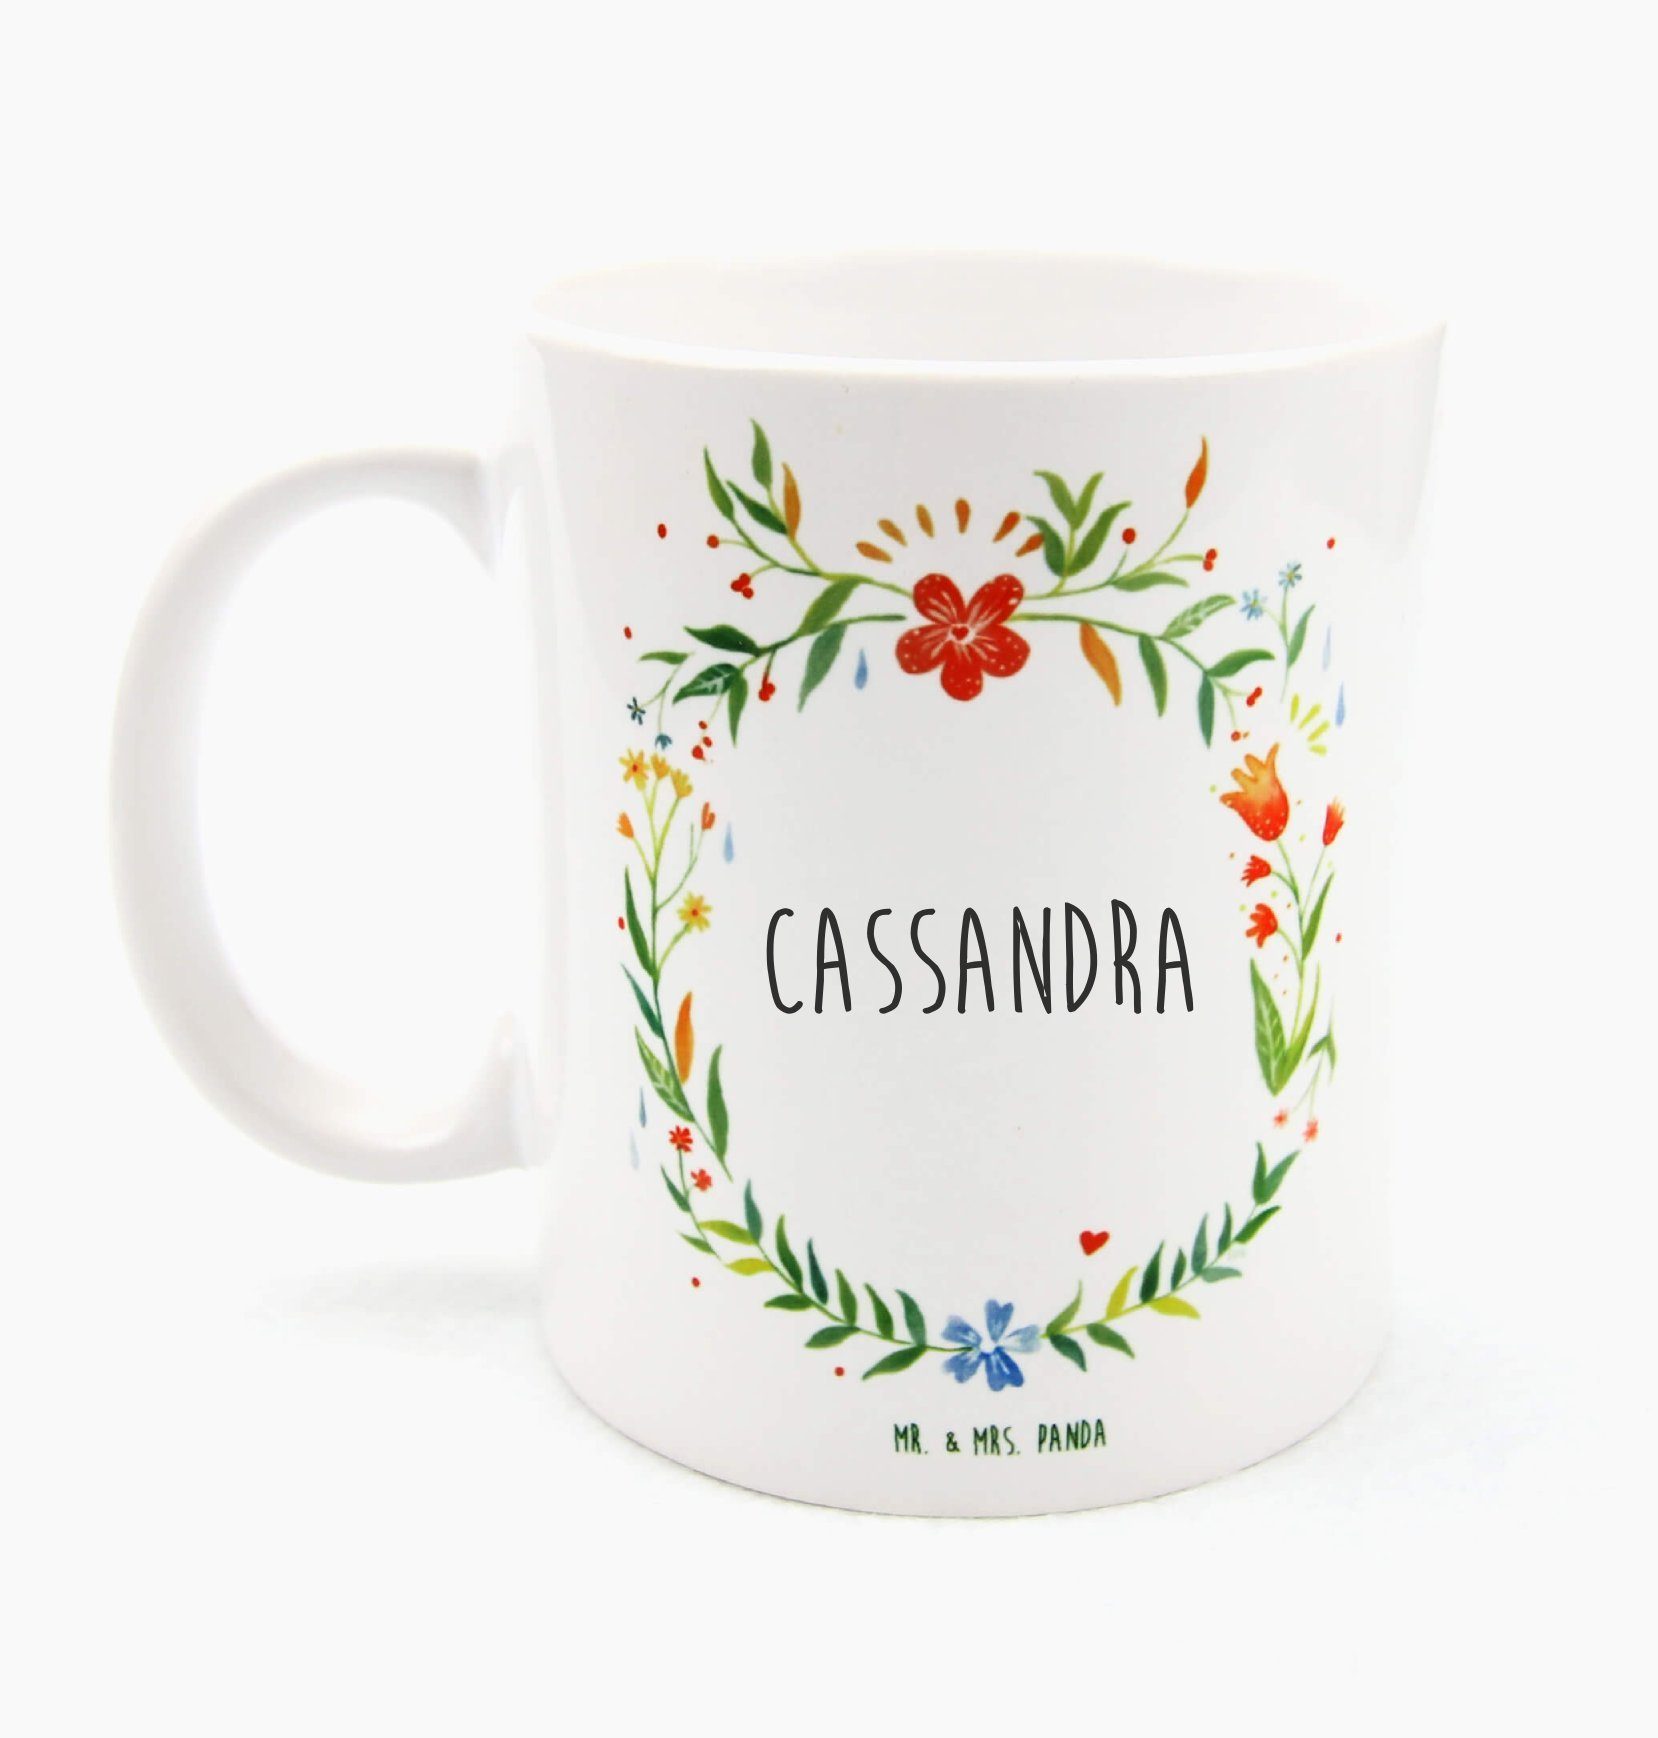 Mr. & Mrs. Panda Tasse Cassandra - Geschenk, Tasse Motive, Geschenk Tasse, Kaffeetasse, Tass, Keramik